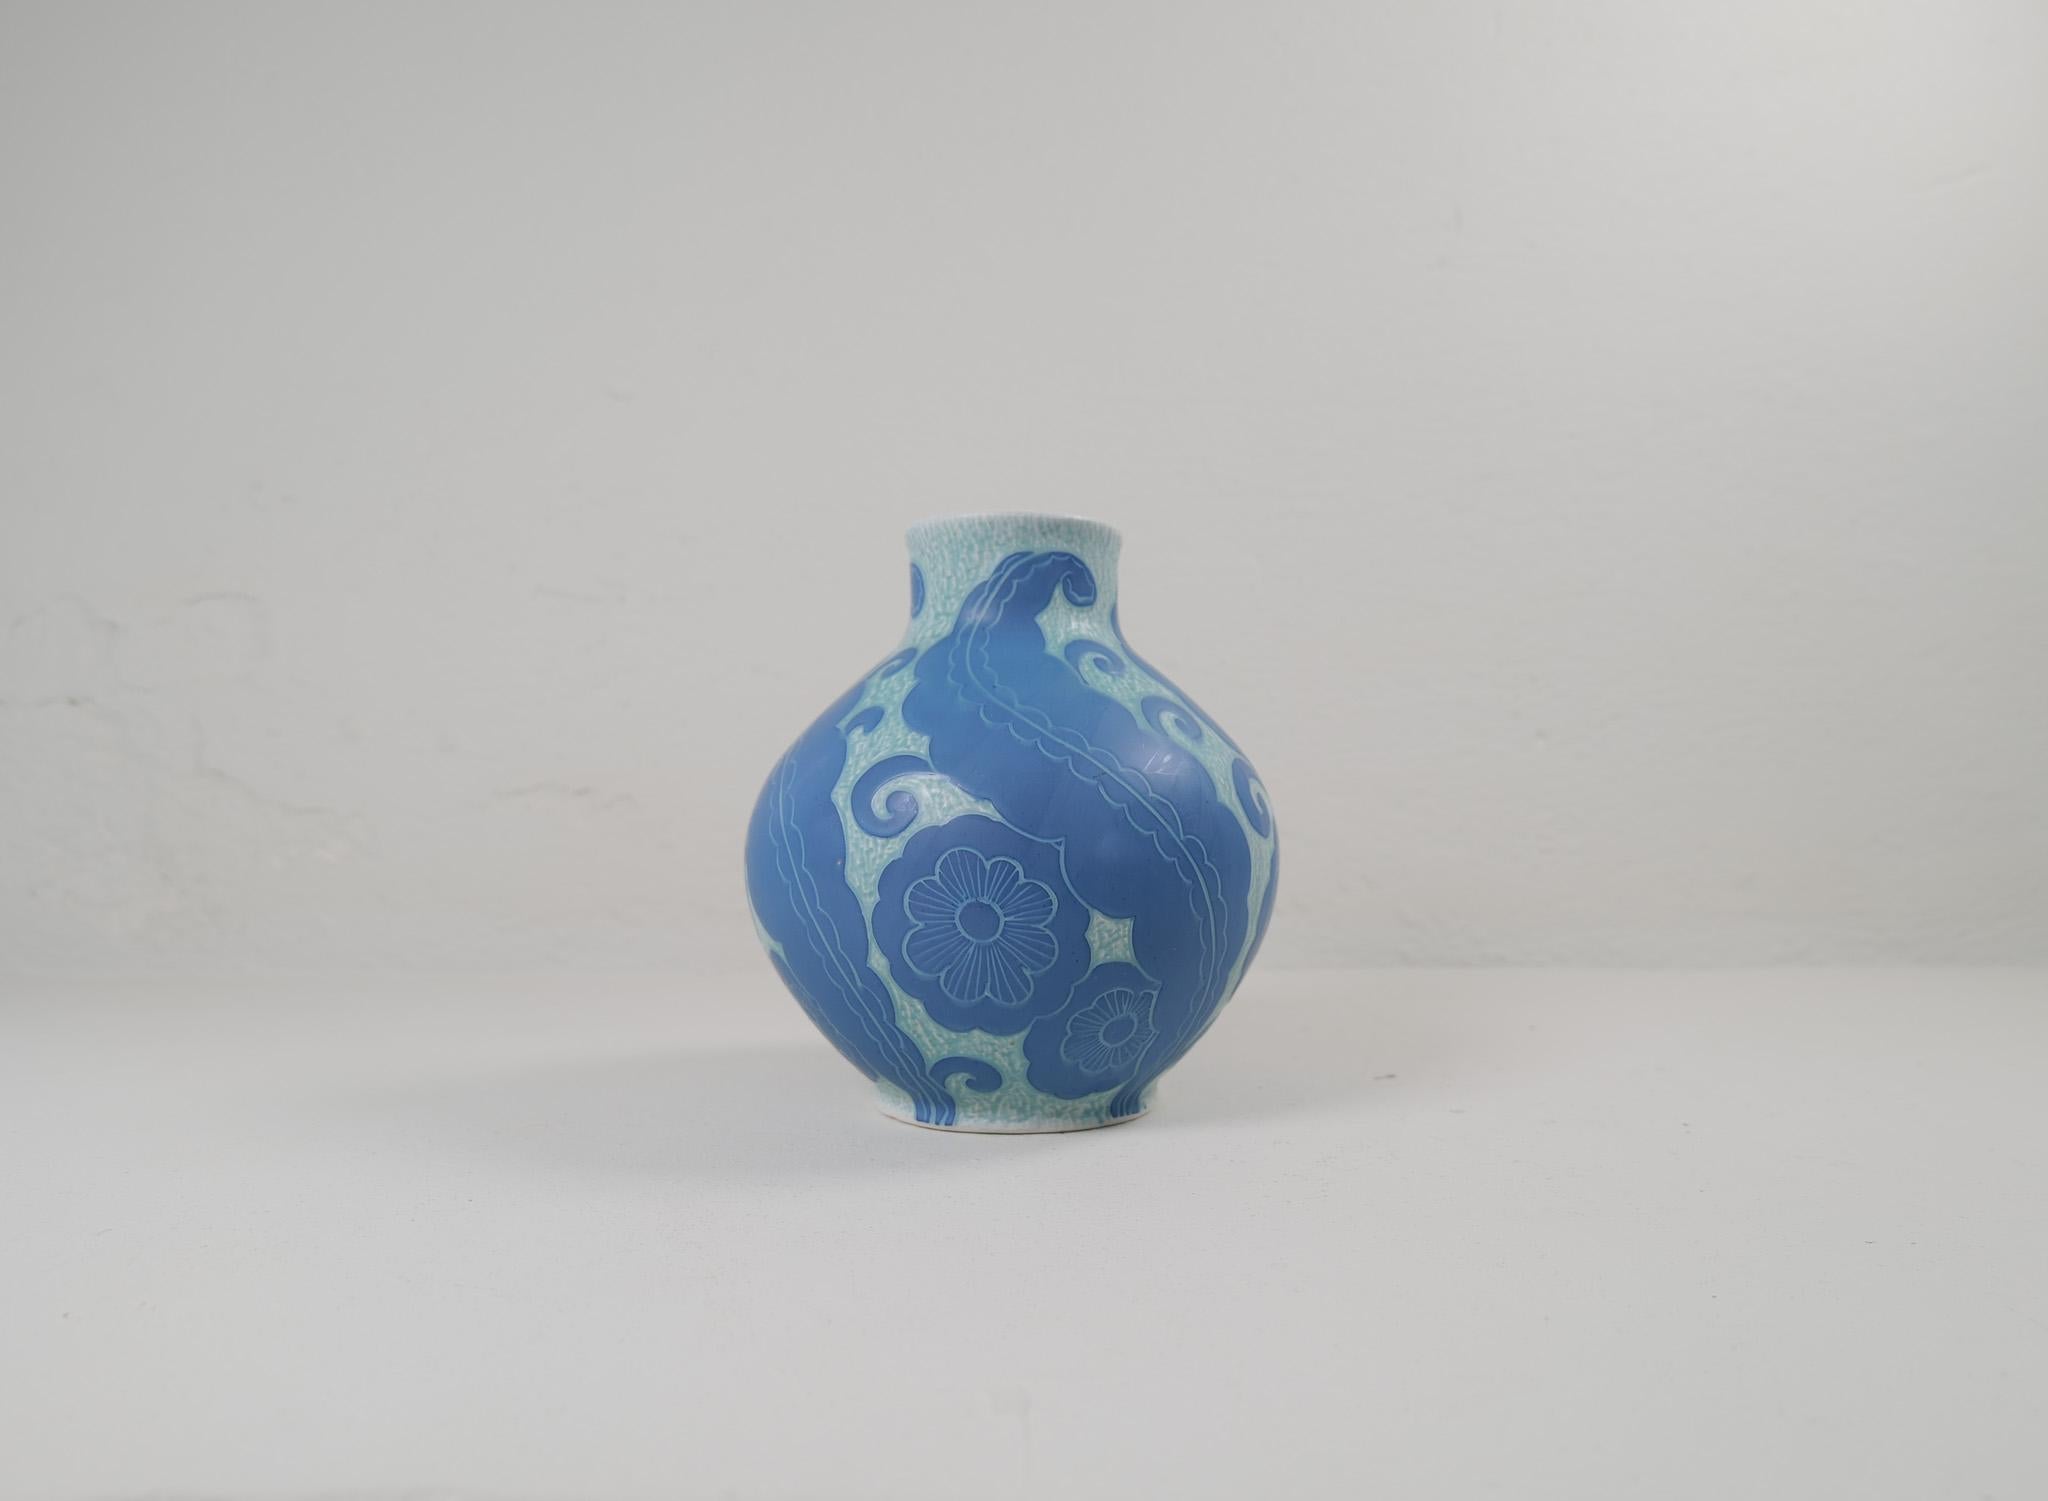 Sgraffito-Vase im Art déco-Stil mit Blumenmotiv, von Josef Ekberg für Gustavsberg.
Sgraffito ist eine Art, zwei Schichten zu einem Muster zu verbinden. Die zweite Schicht wird abgekratzt und übrig bleibt ein hellblauer Hintergrund mit einem schönen